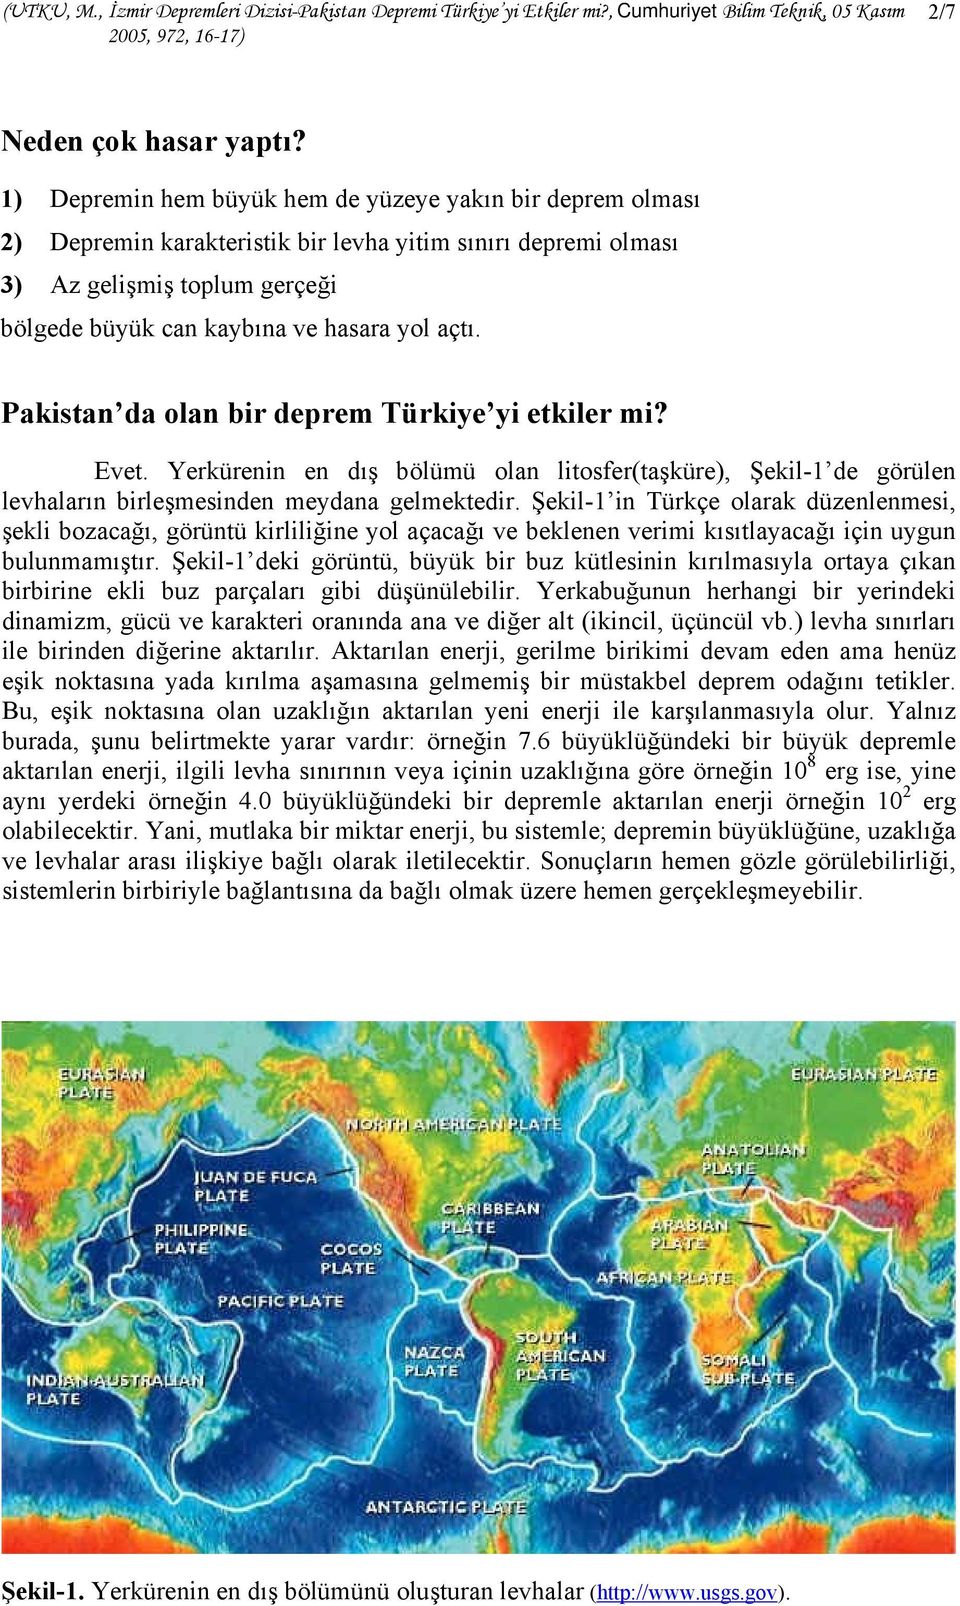 Pakistan da olan bir deprem Türkiye yi etkiler mi? Evet. Yerkürenin en dış bölümü olan litosfer(taşküre), Şekil-1 de görülen levhaların birleşmesinden meydana gelmektedir.